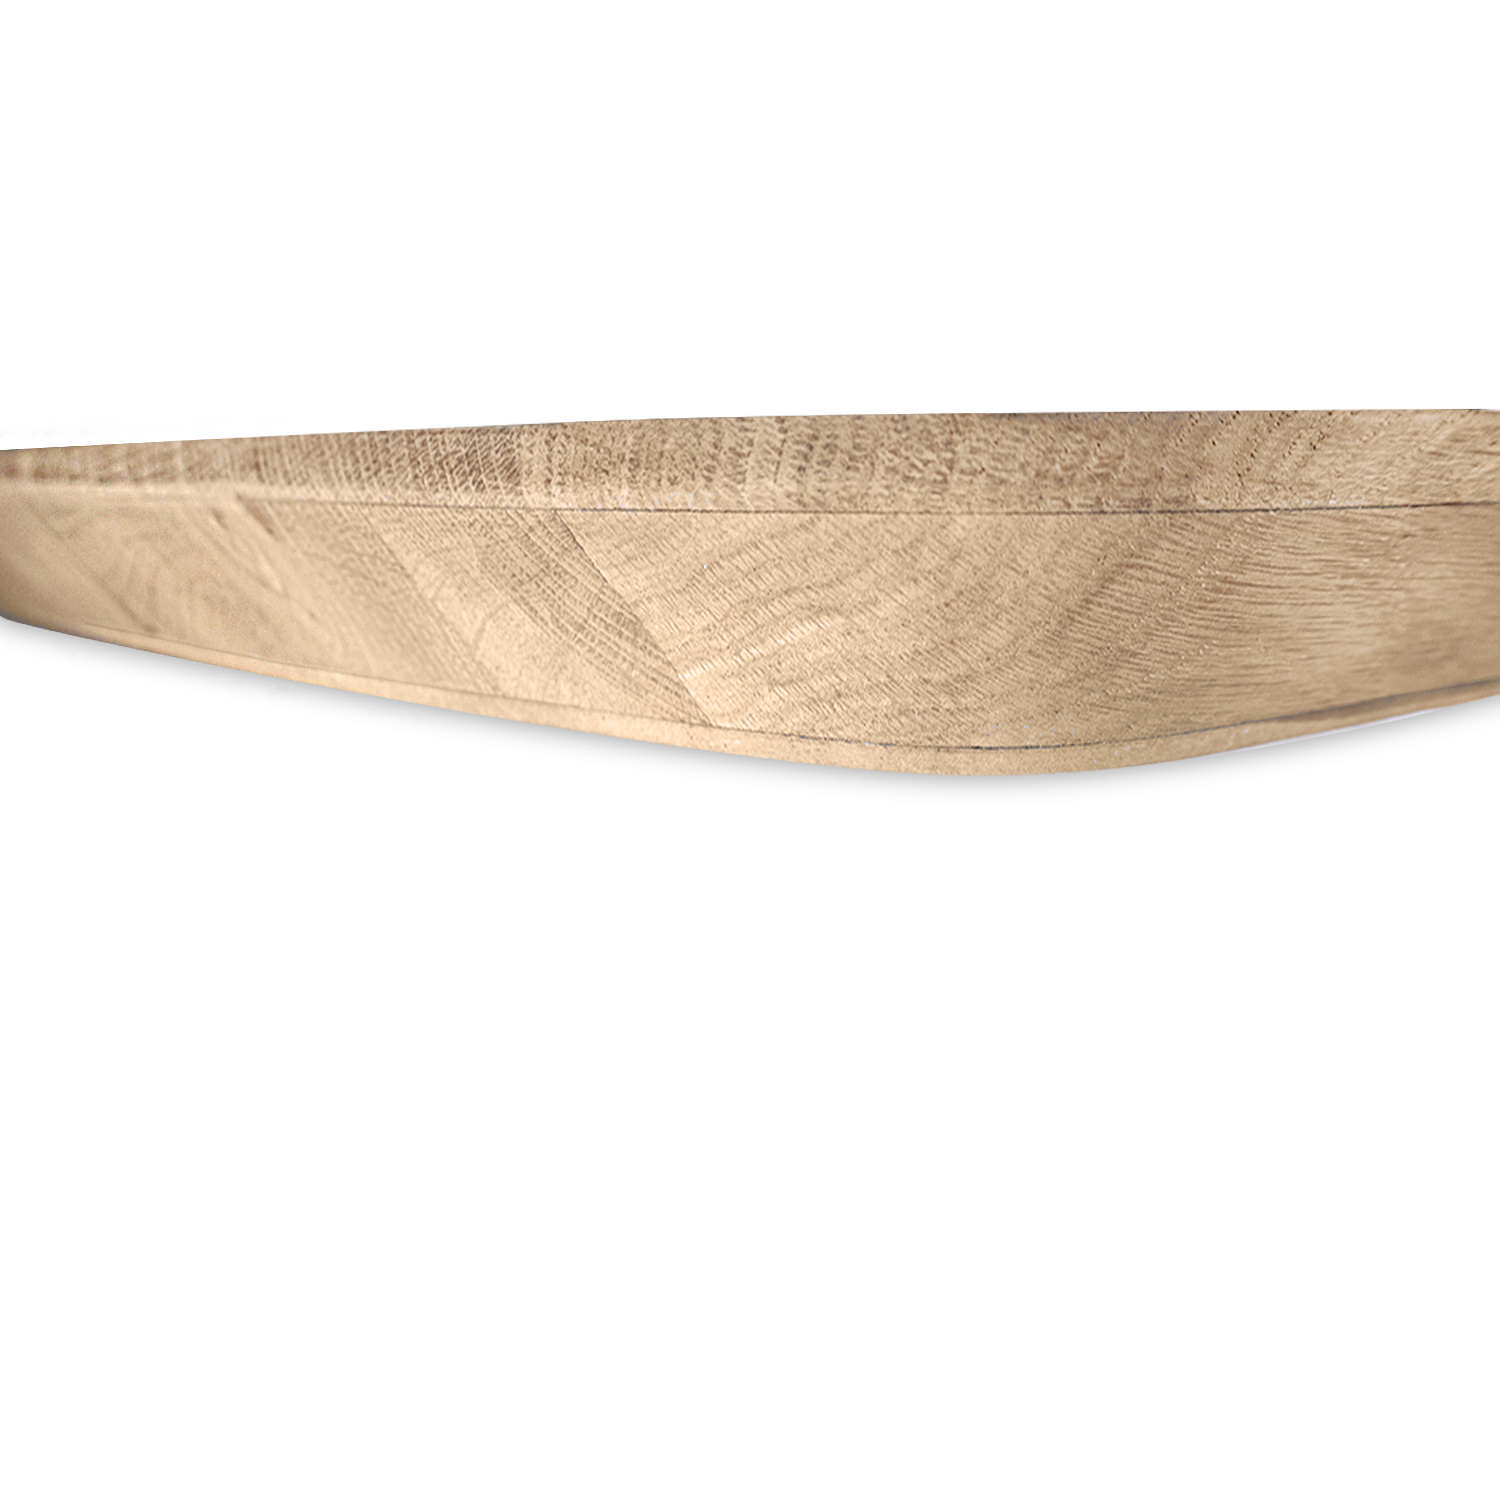  Tischplatte Eichenfurnier dänisch-oval - 3,6 cm dick - Eichenholz A-Qualität - mit Schweizer Kante - Eichenholz A-Qualität - mit abgeschrägten Kanten - Bootsform Eiche Tischplatte massiv - HF 8-12%